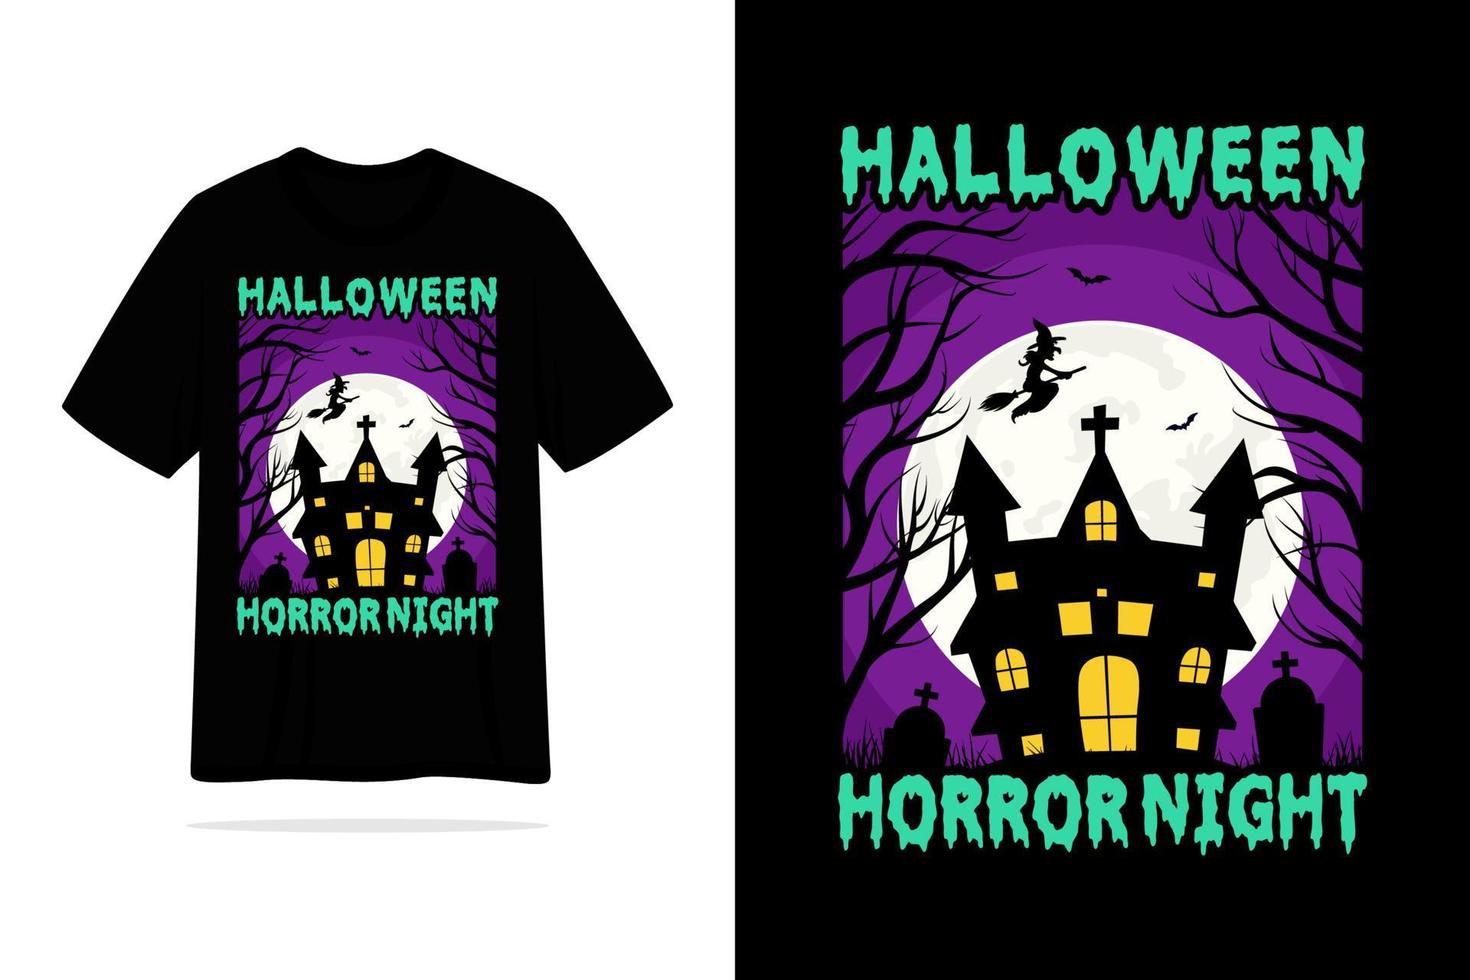 Halloween horror night tshirt design illustration vector